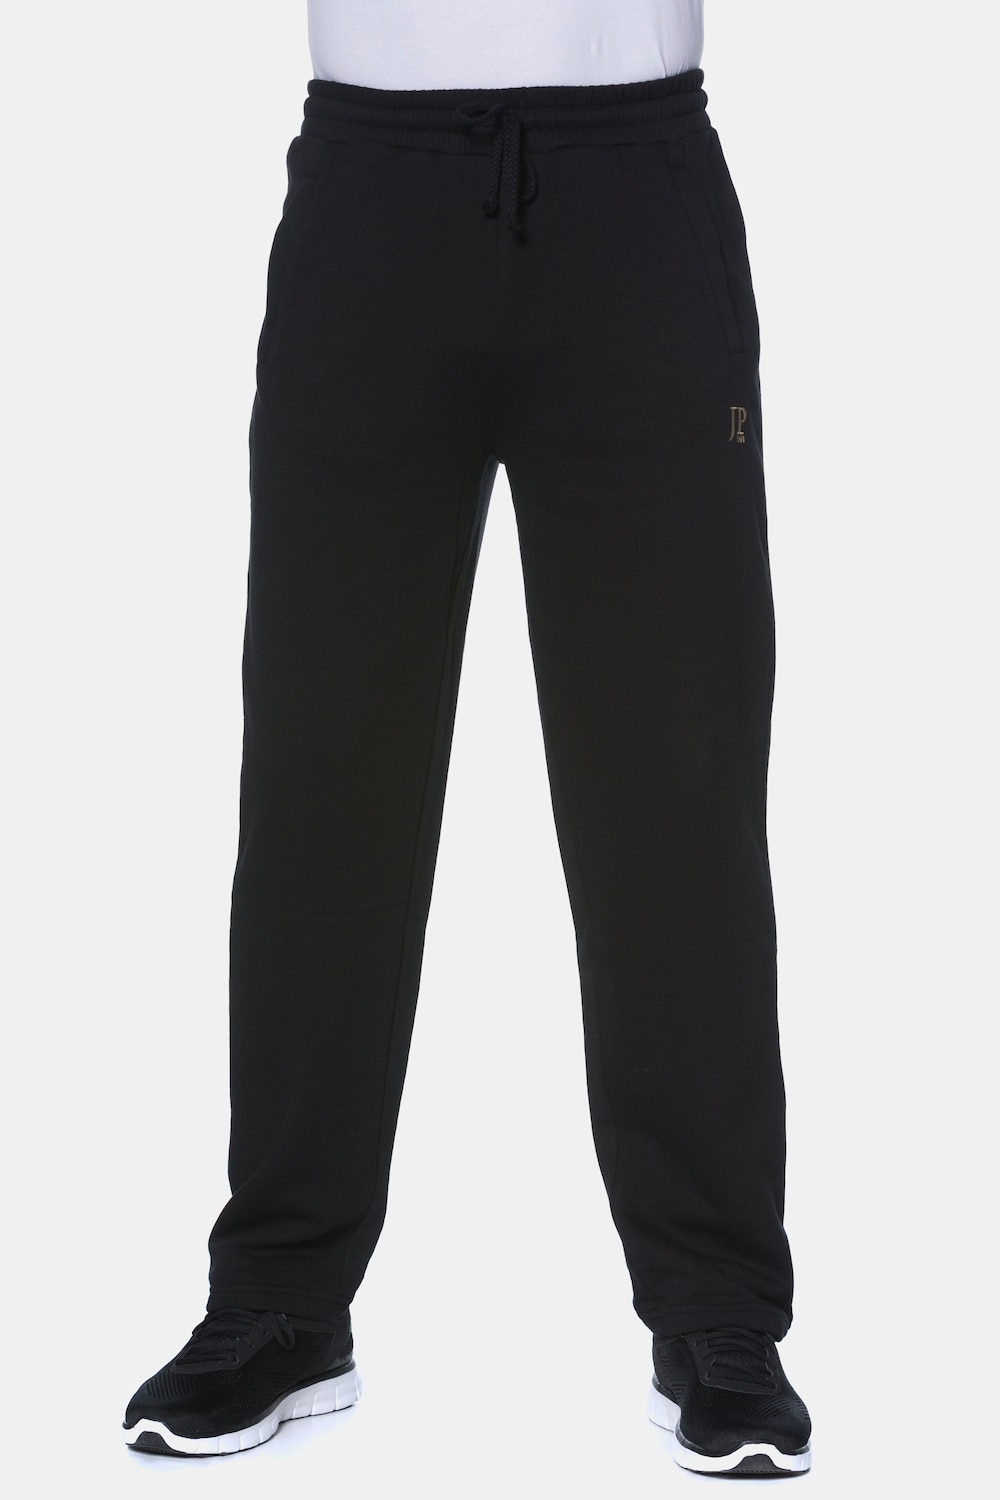 Große Größen Jogginghose, Herren, schwarz, Größe: 8XL, Baumwolle/Polyester, JP1880 von JP1880